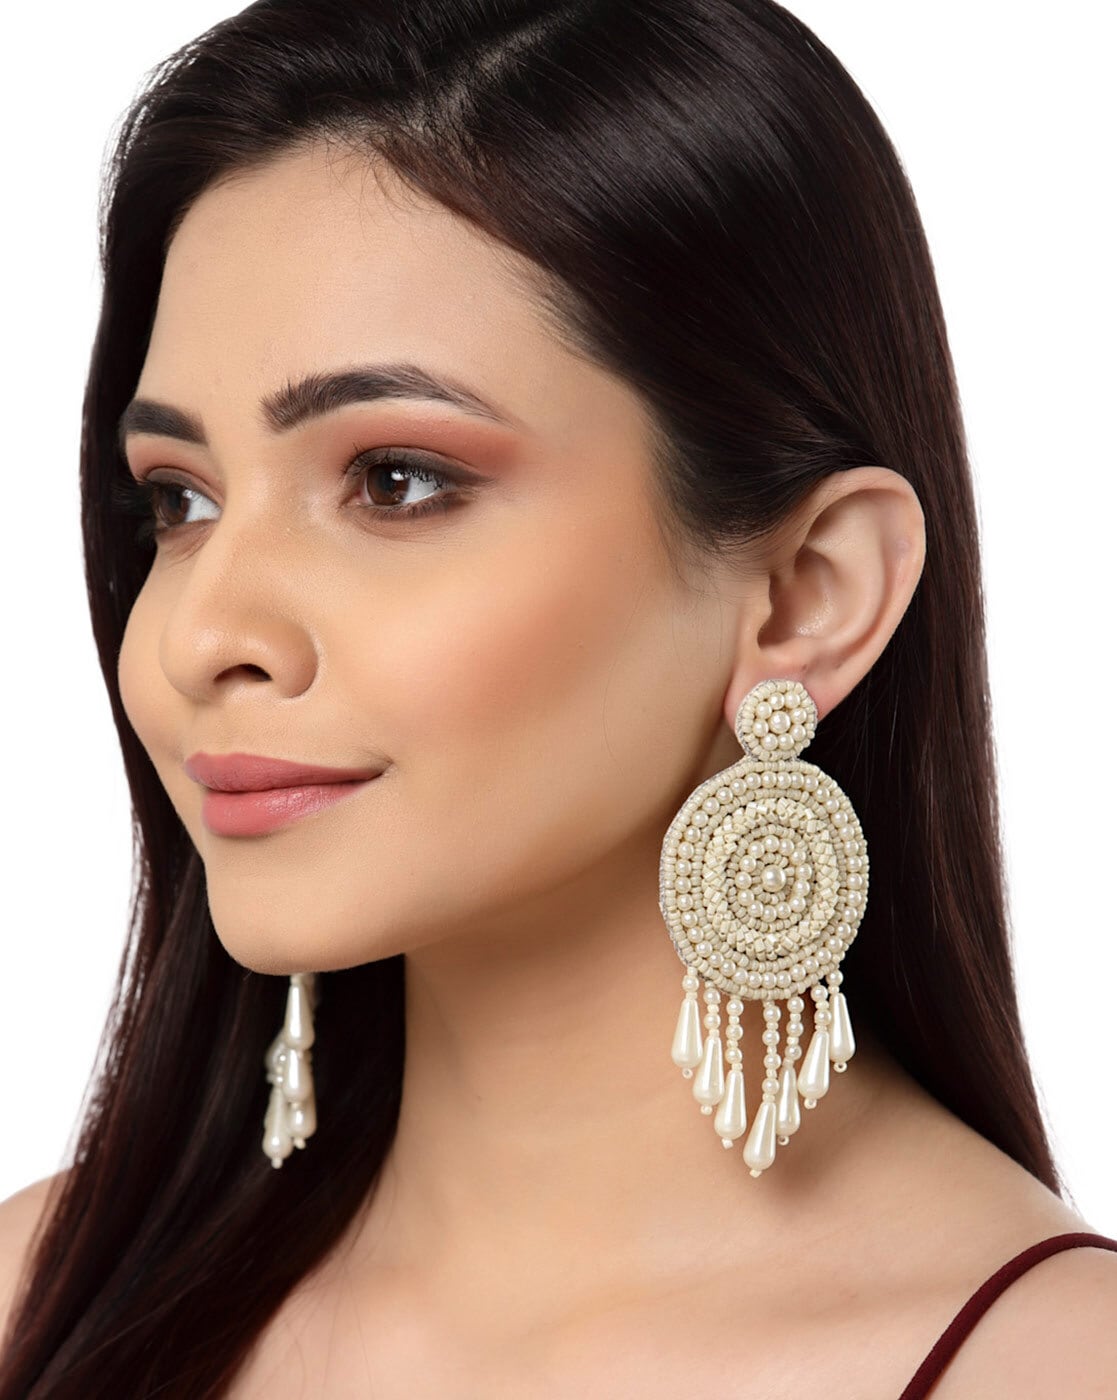 Black Earrings - Buy Black Earrings Online at Best Price in India | Myntra